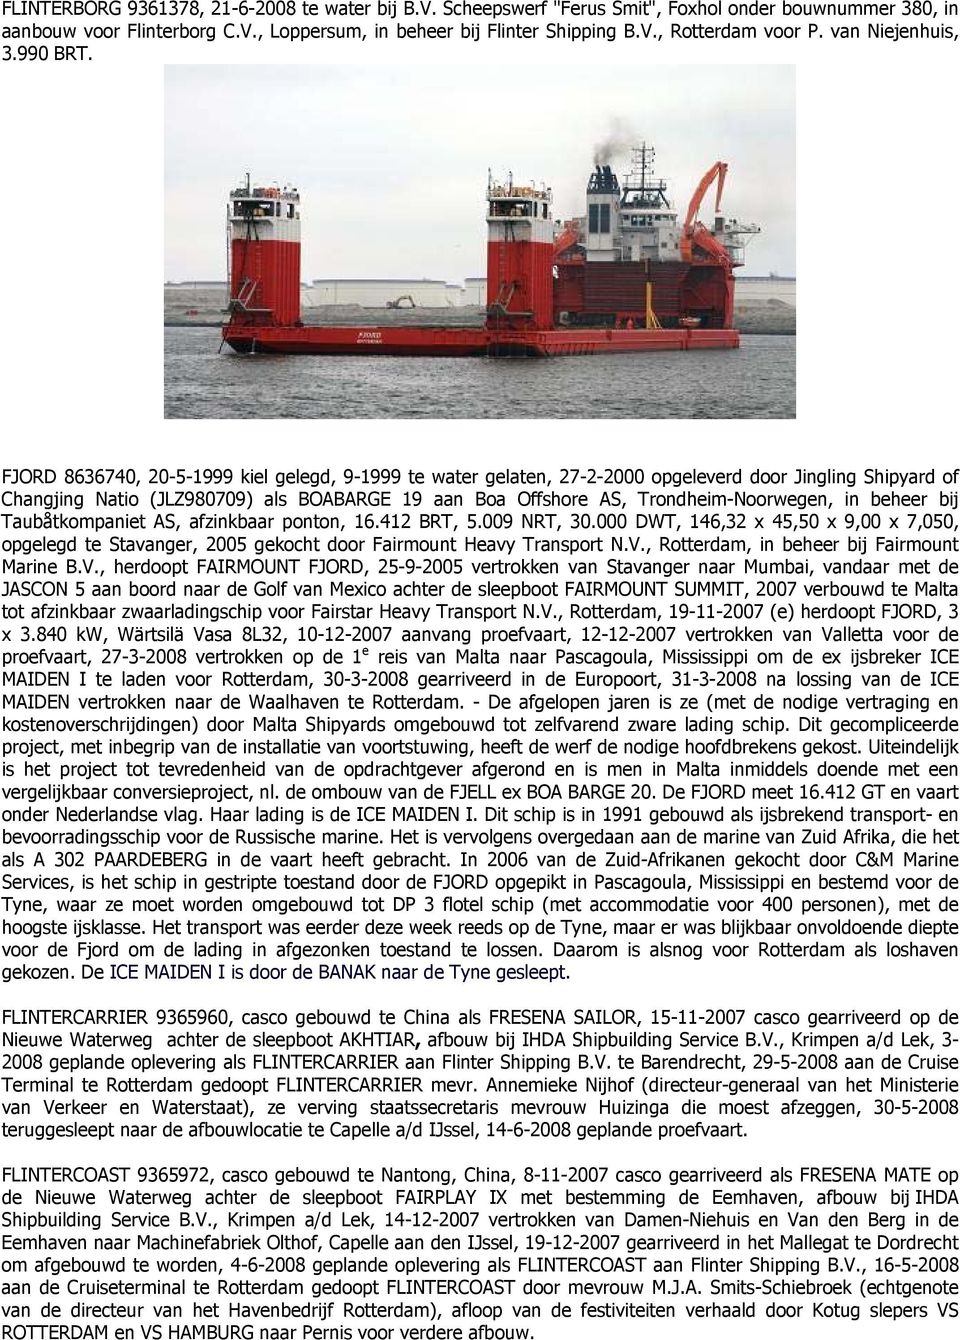 FJORD 8636740, 20-5-1999 kiel gelegd, 9-1999 te water gelaten, 27-2-2000 opgeleverd door Jingling Shipyard of Changjing Natio (JLZ980709) als BOABARGE 19 aan Boa Offshore AS, Trondheim-Noorwegen, in